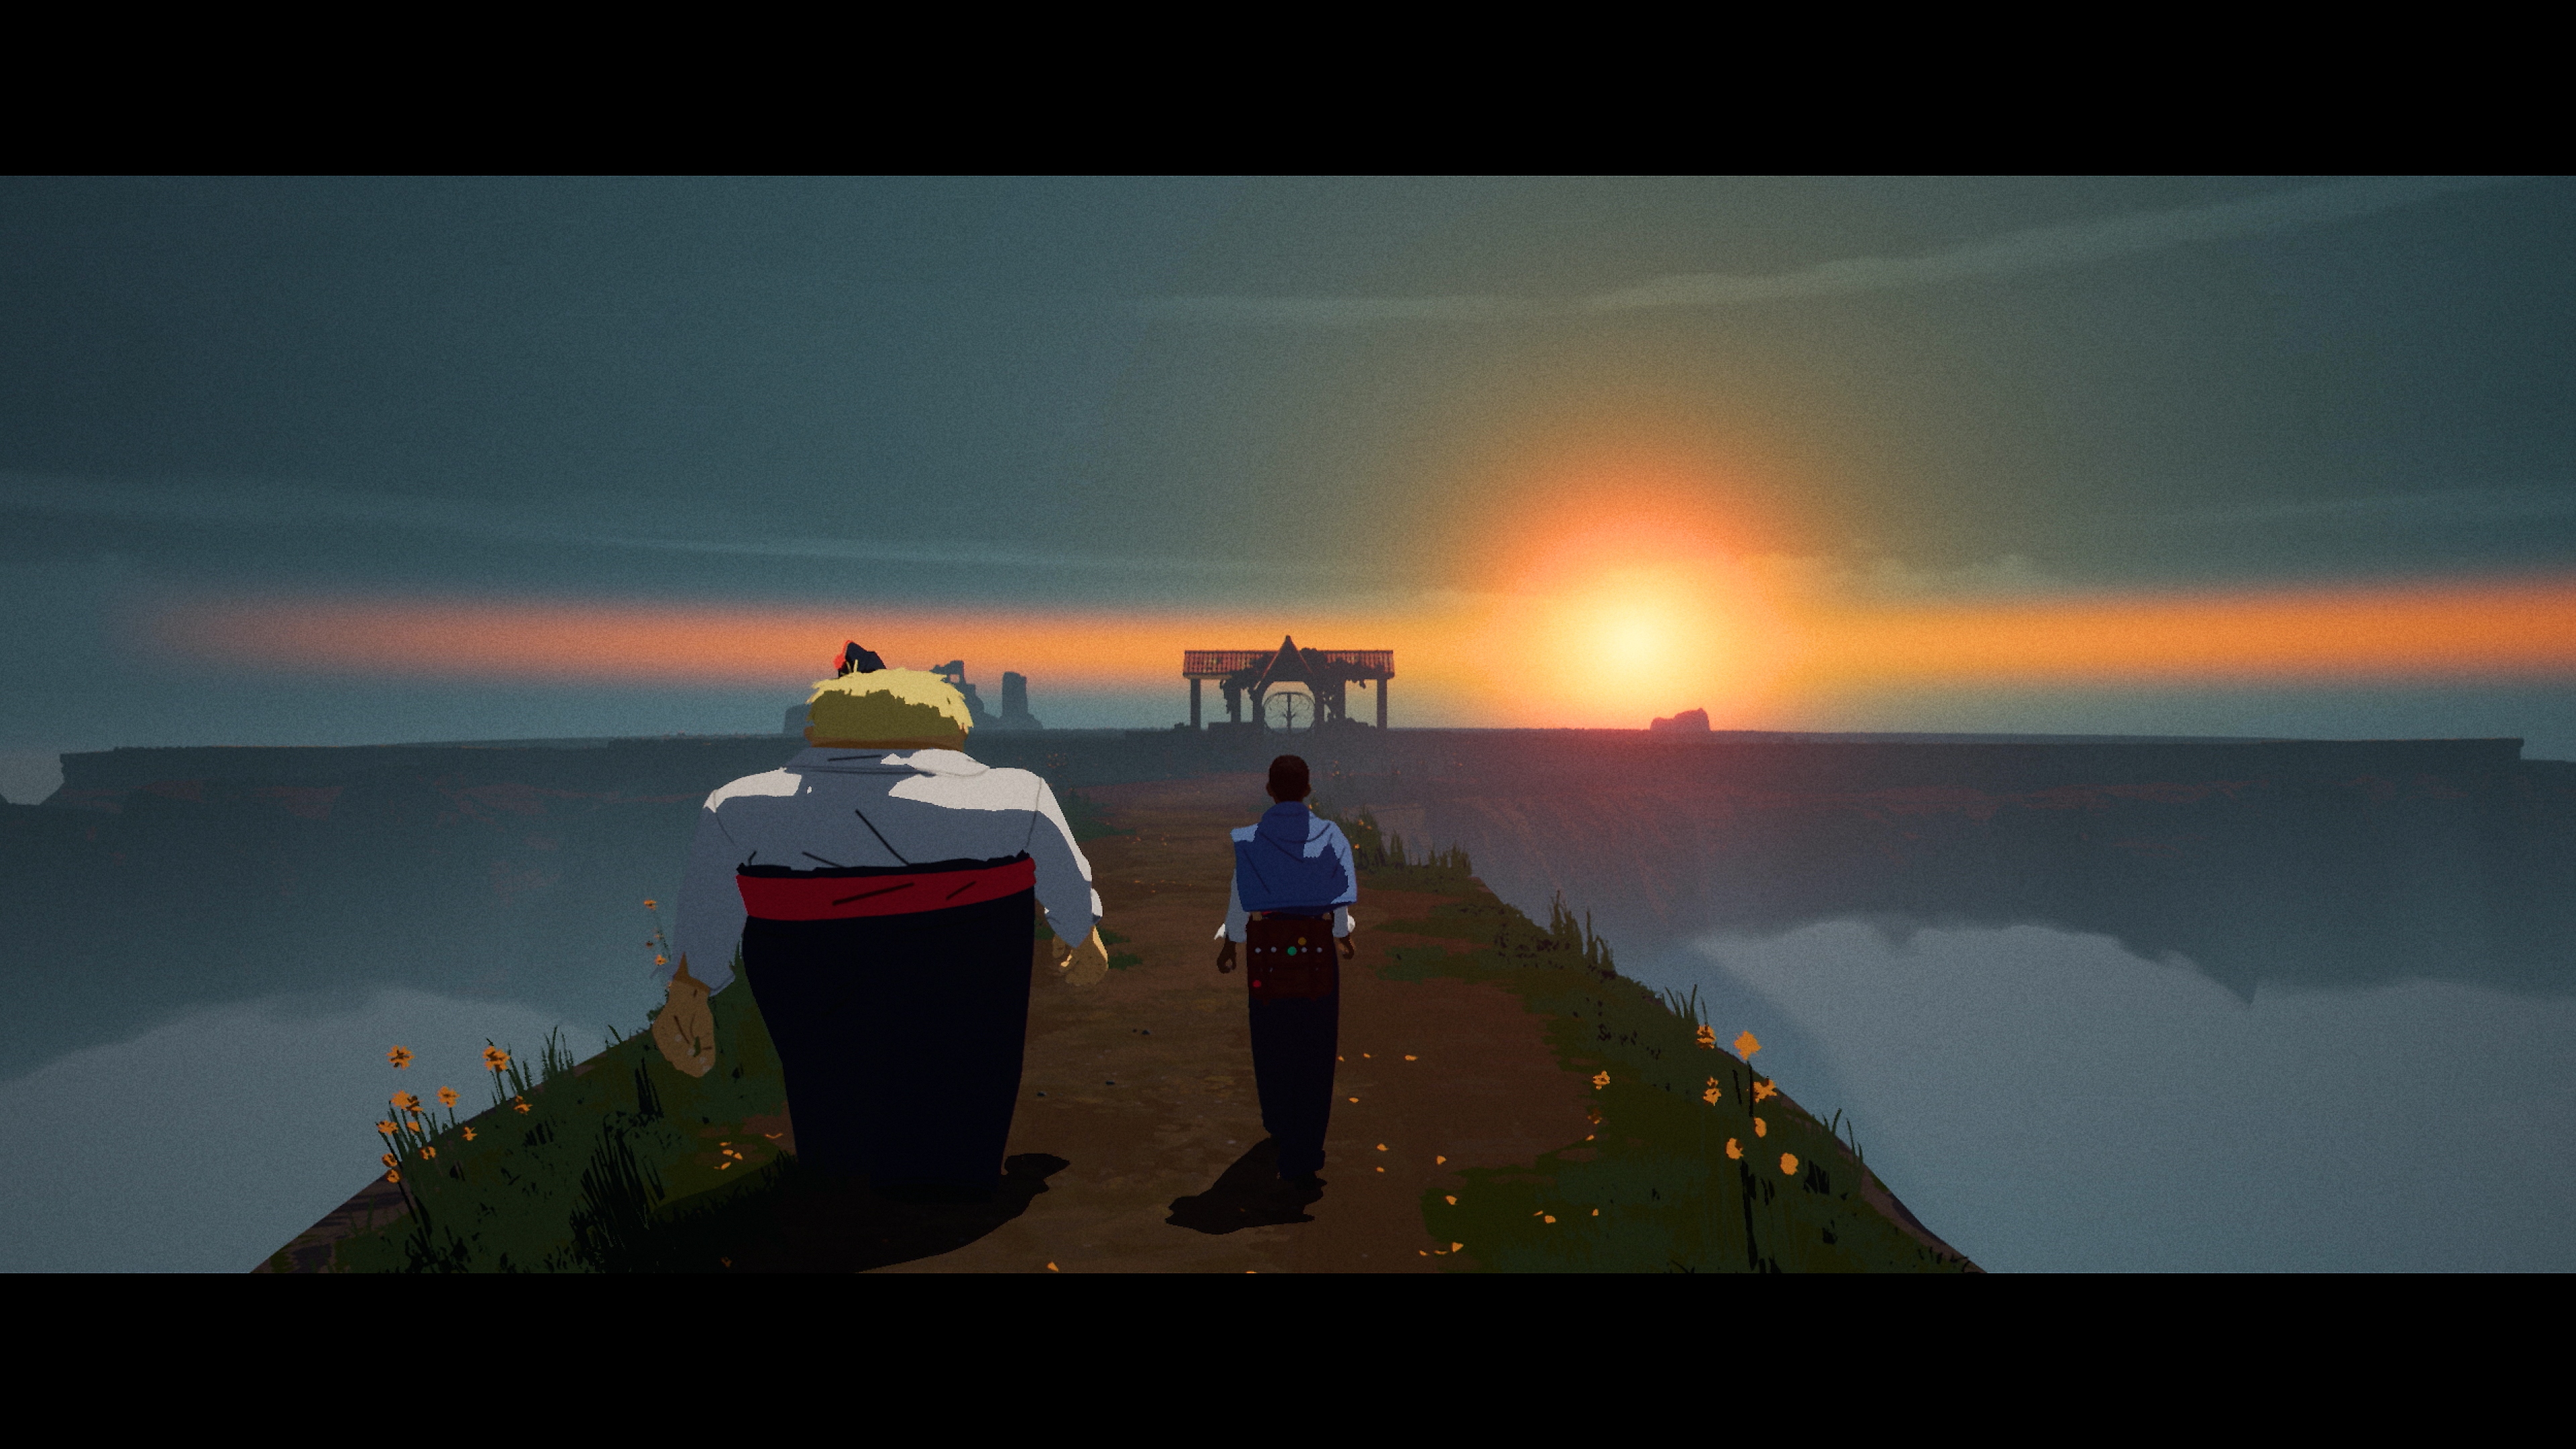 Season: Captura de pantalla de A Letter to the Future mostrando a la protagonista de pie junto a otro personaje cerca del agua